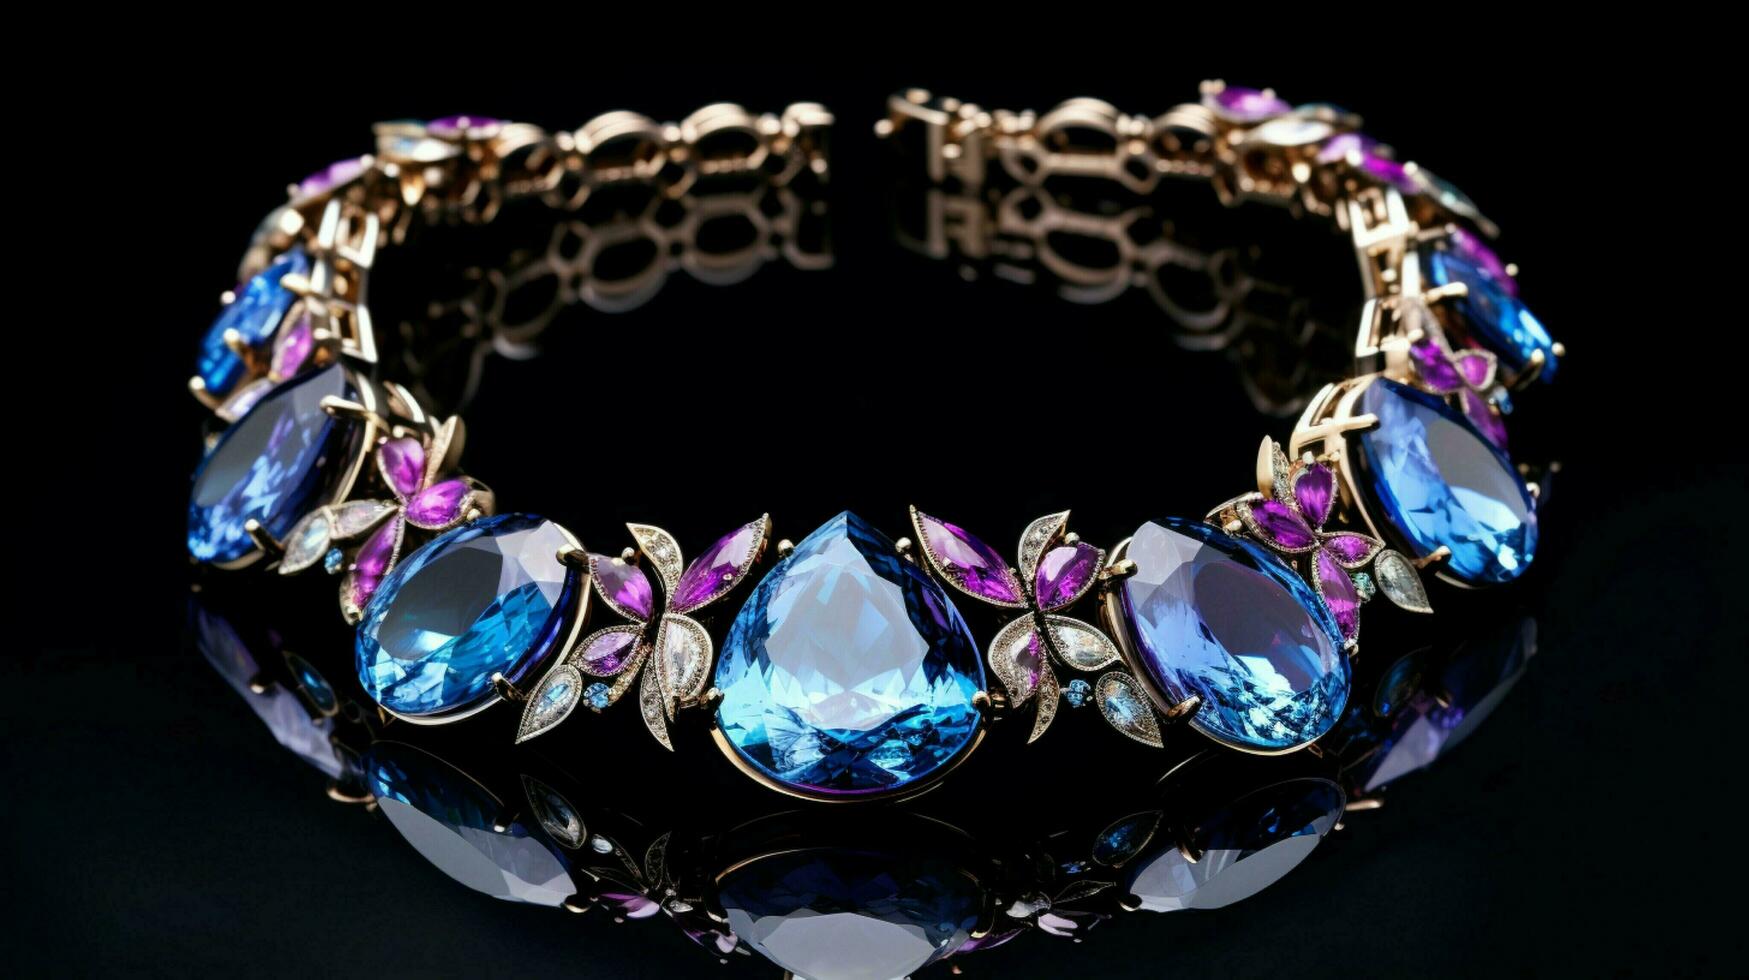 shiny gemstone necklace reflects elegance and glamour photo